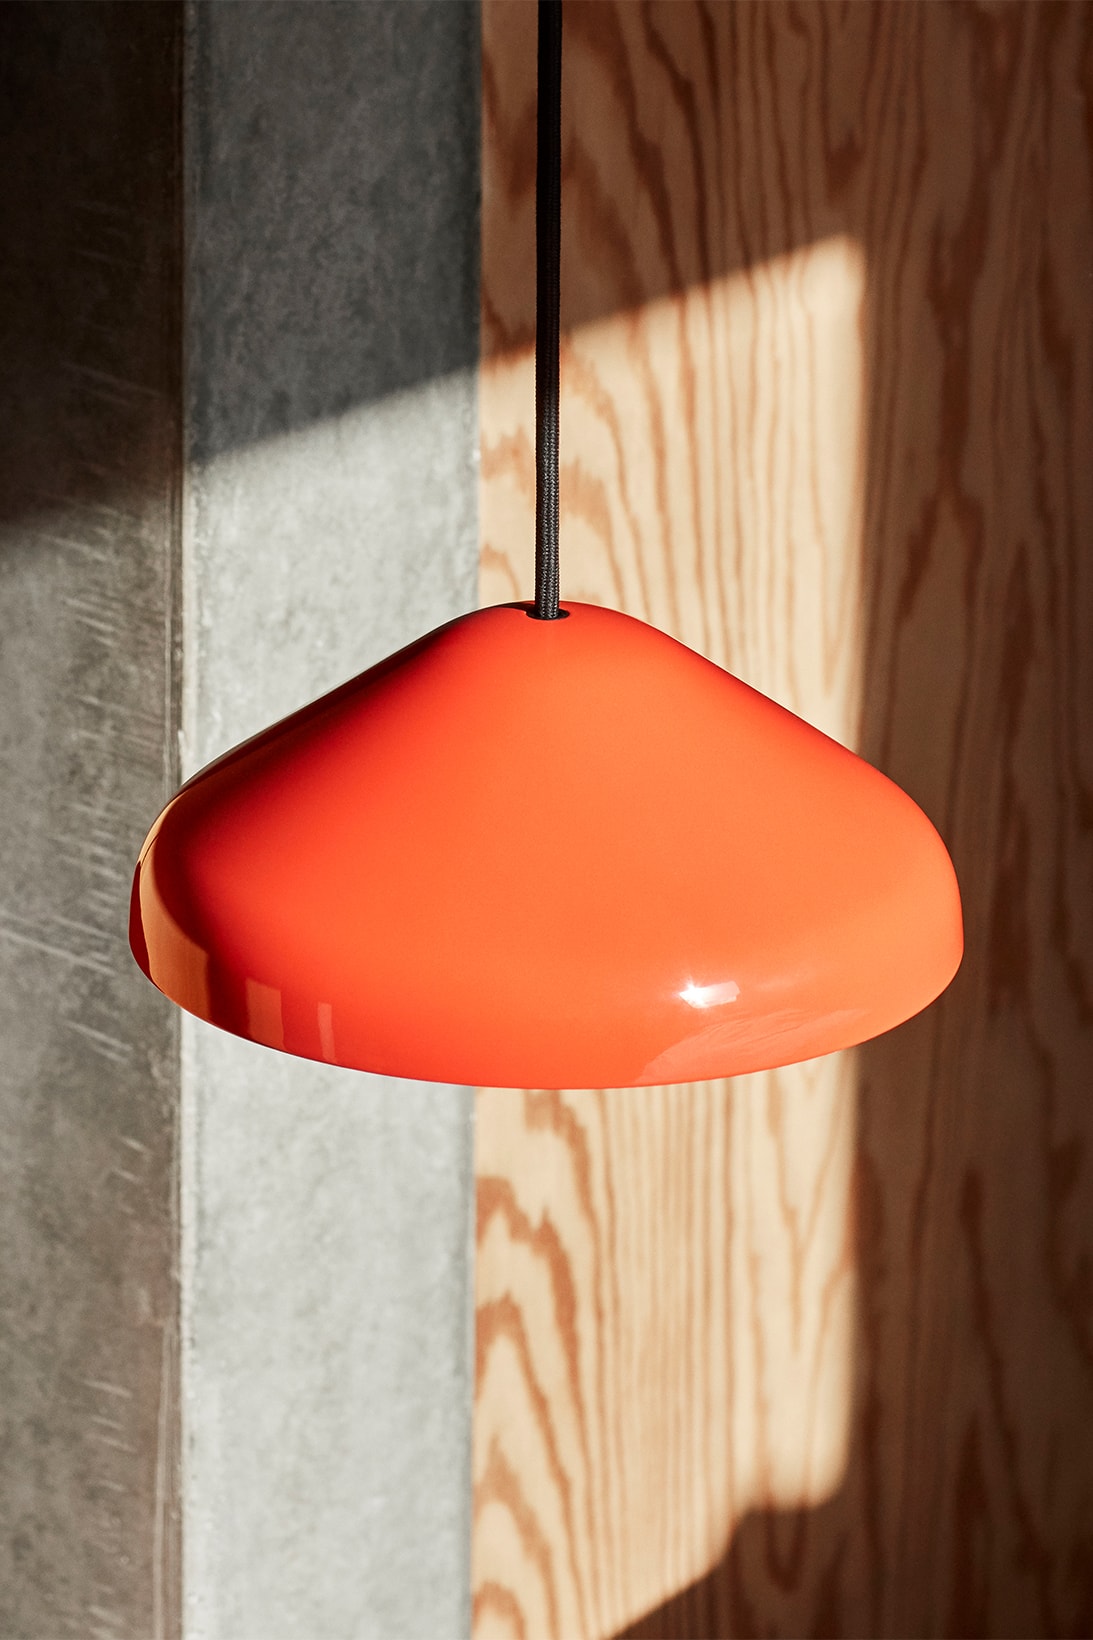 Introducing the HAY Pao Portable Lamp designed by Naoto Fukasawa 